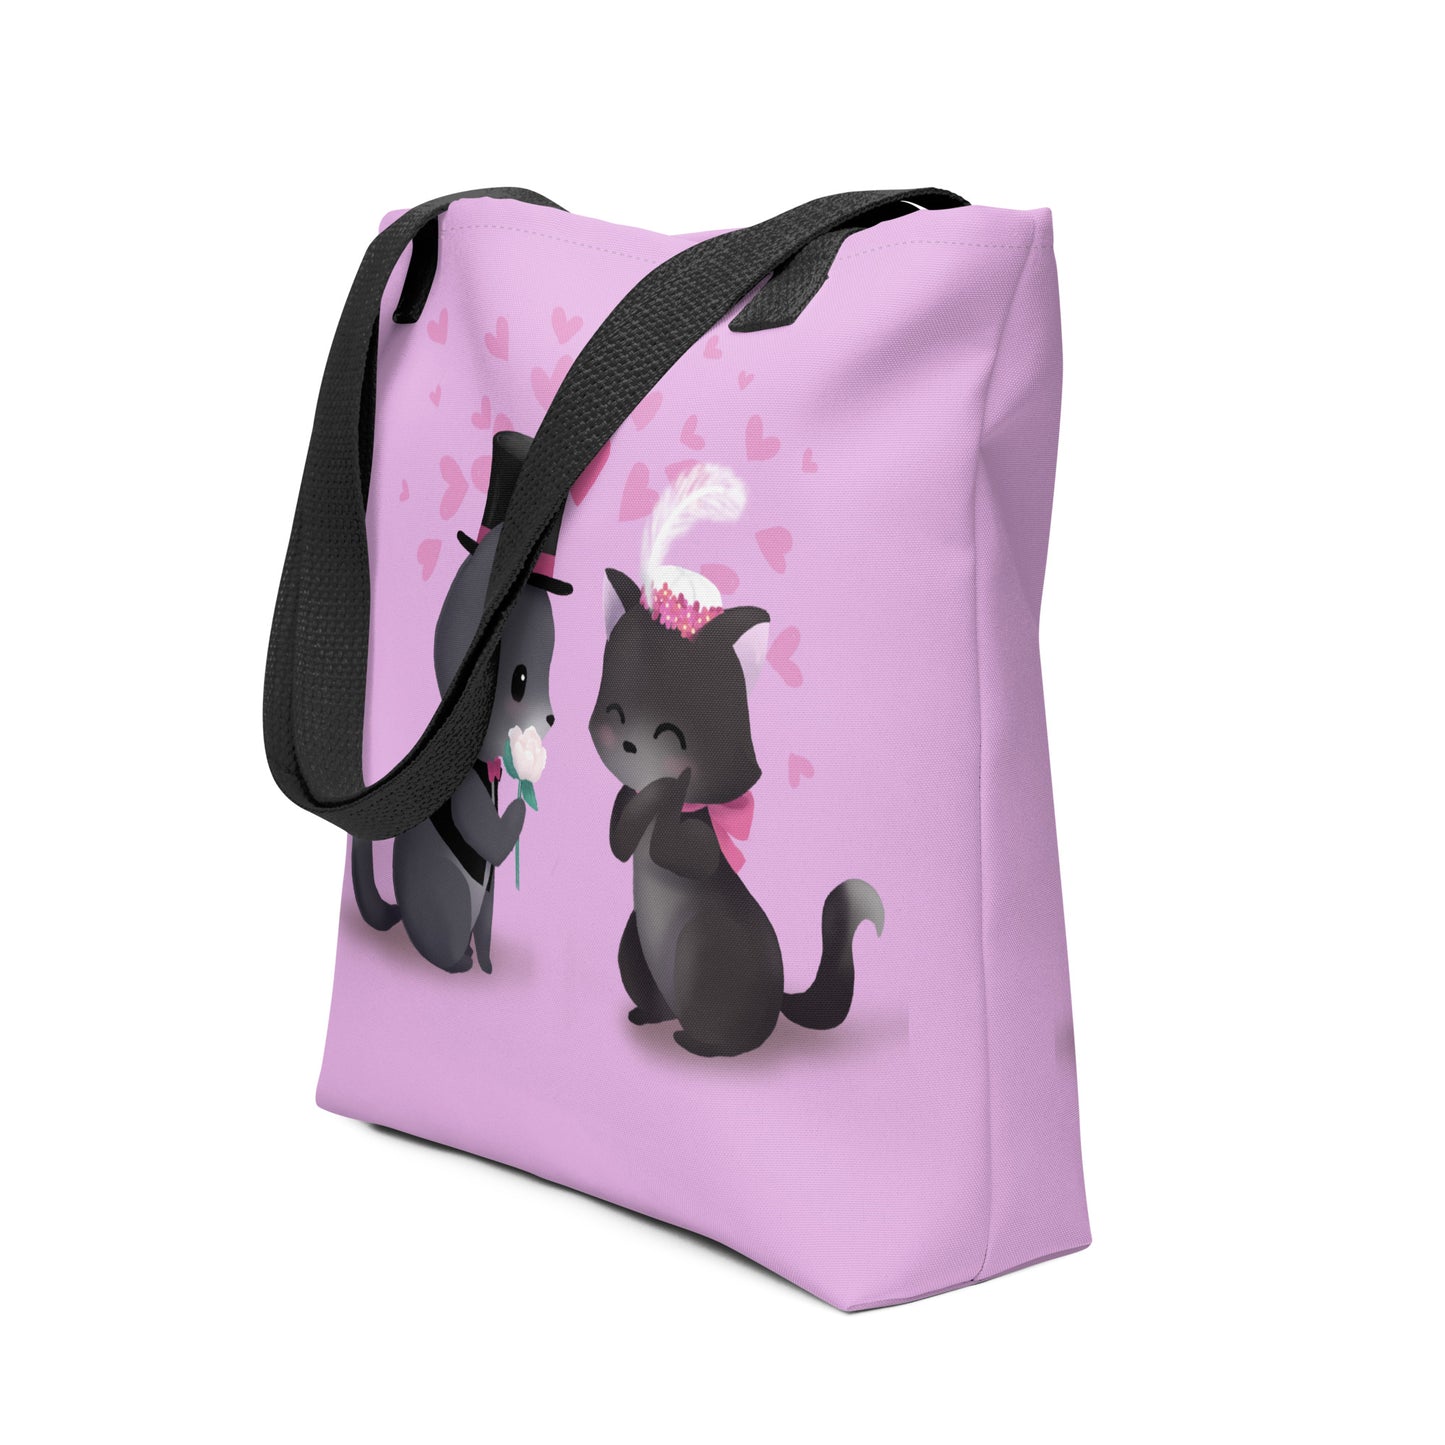 Vintage Kitty Love Tote Bag